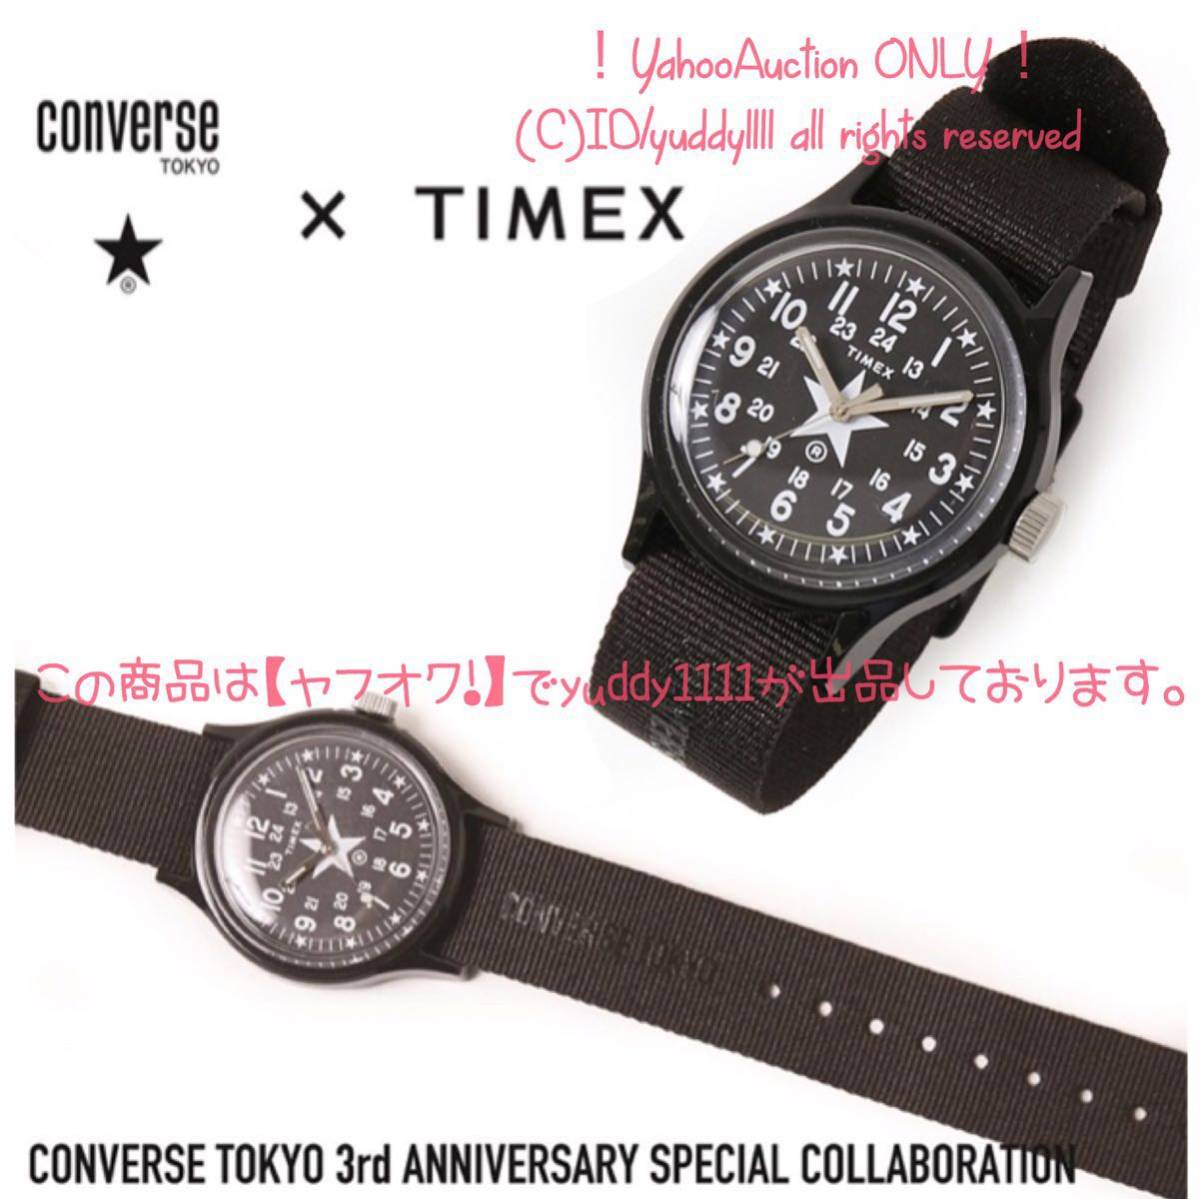  новый товар Converse Tokyo 3 годовщина сотрудничество CONVERSE TOKYO специальный заказ TIMEX Camper наручные часы ограничение Timex быстрое решение 